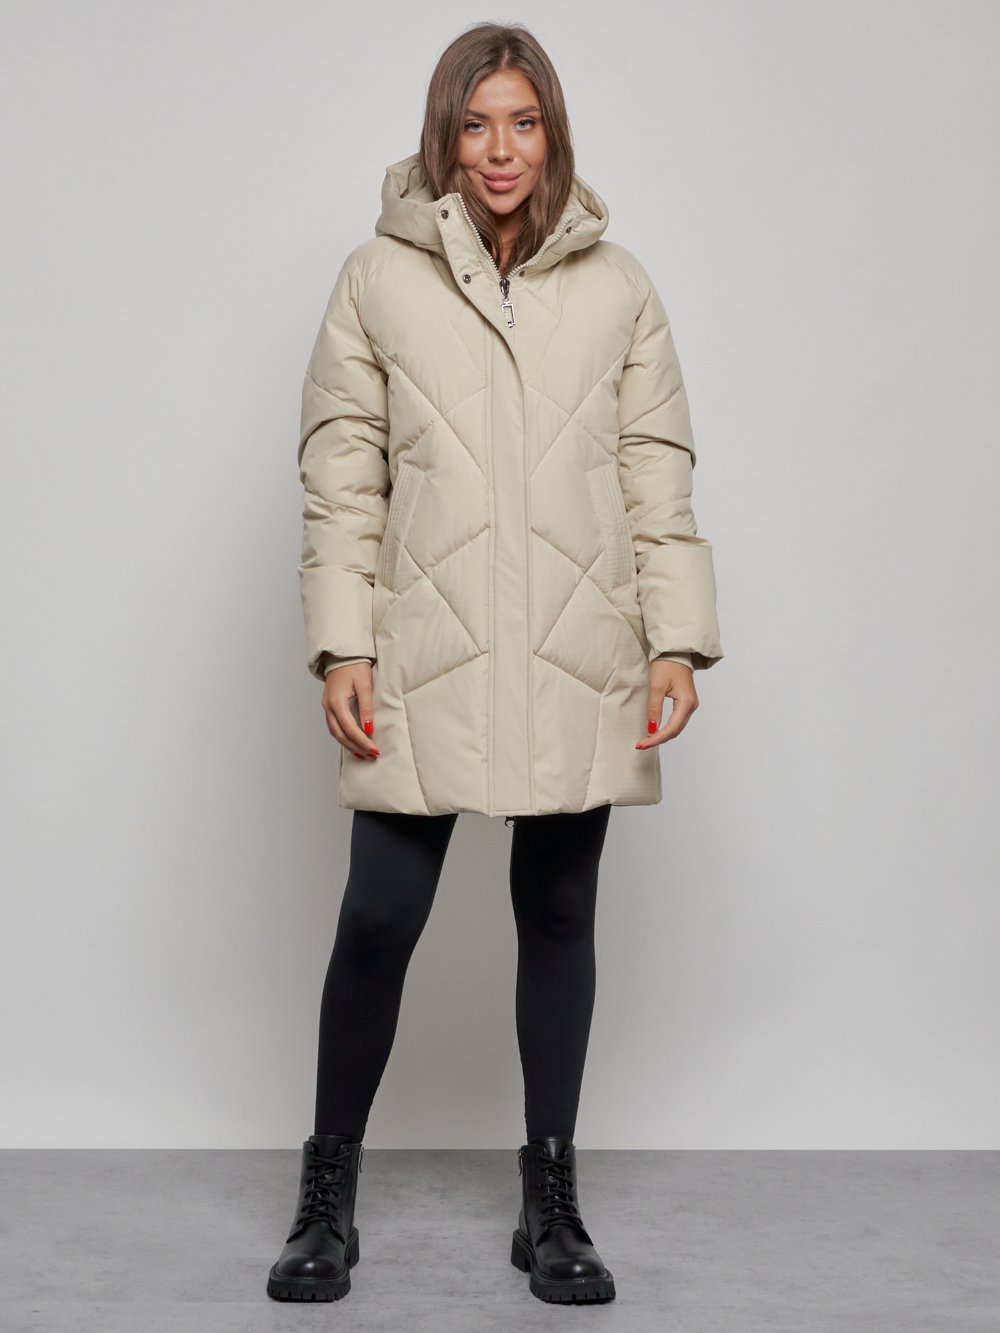 Купить куртку женскую оптом от производителя недорого в Москве 52361B 1